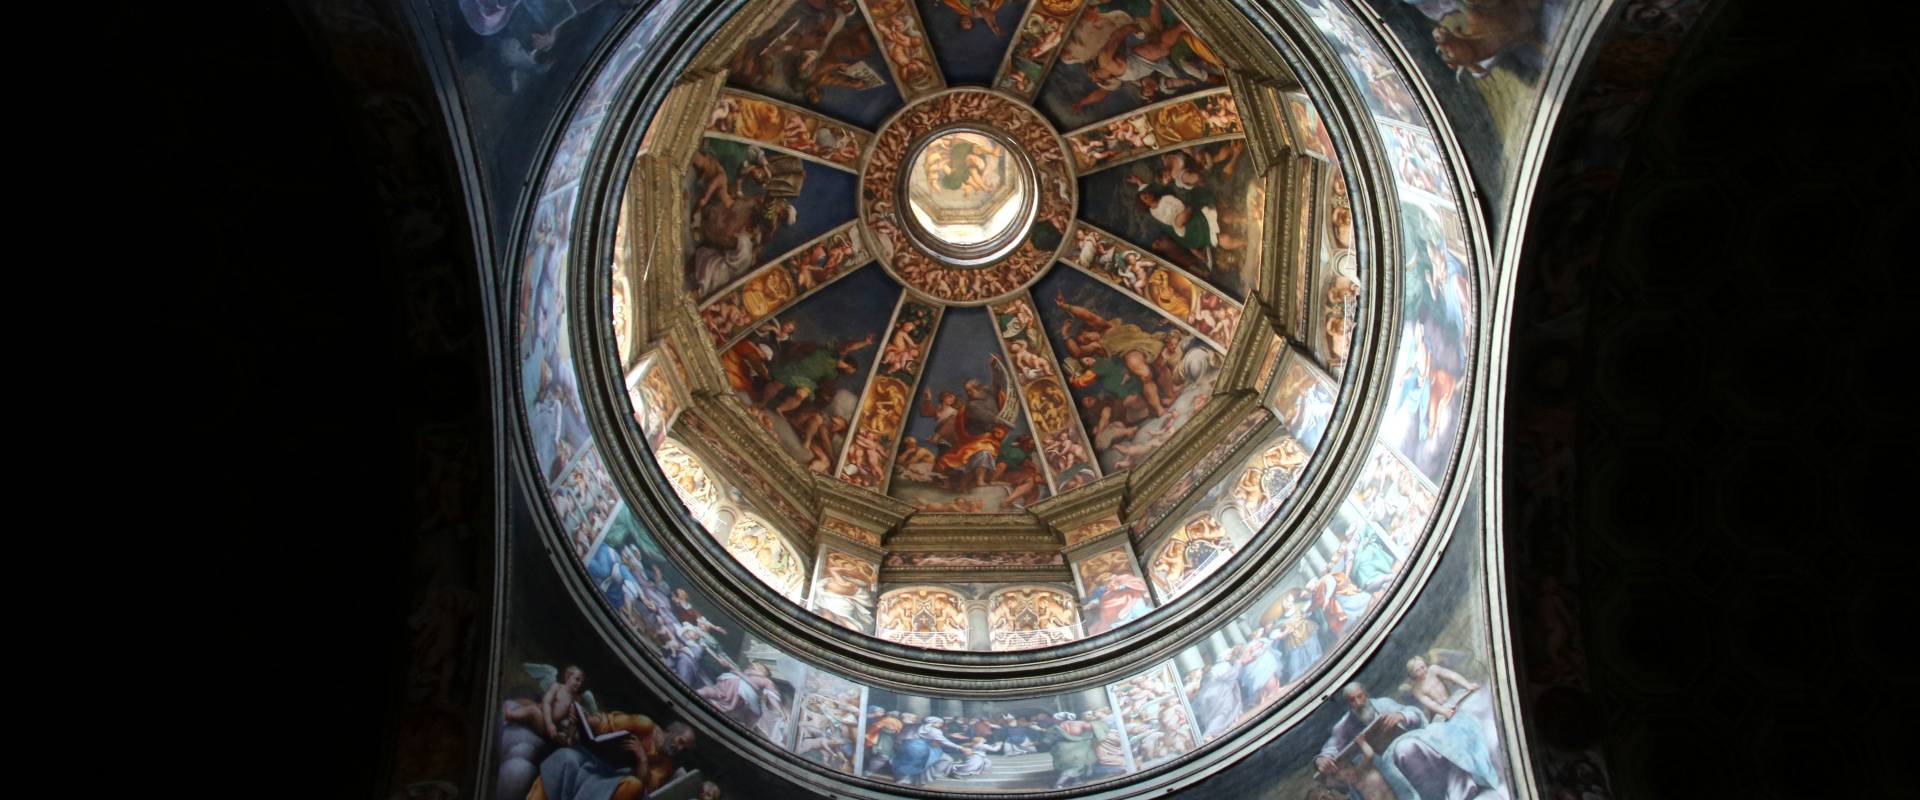 Cupola, affrescato dal Pordenone (1530) 05 foto di Mongolo1984